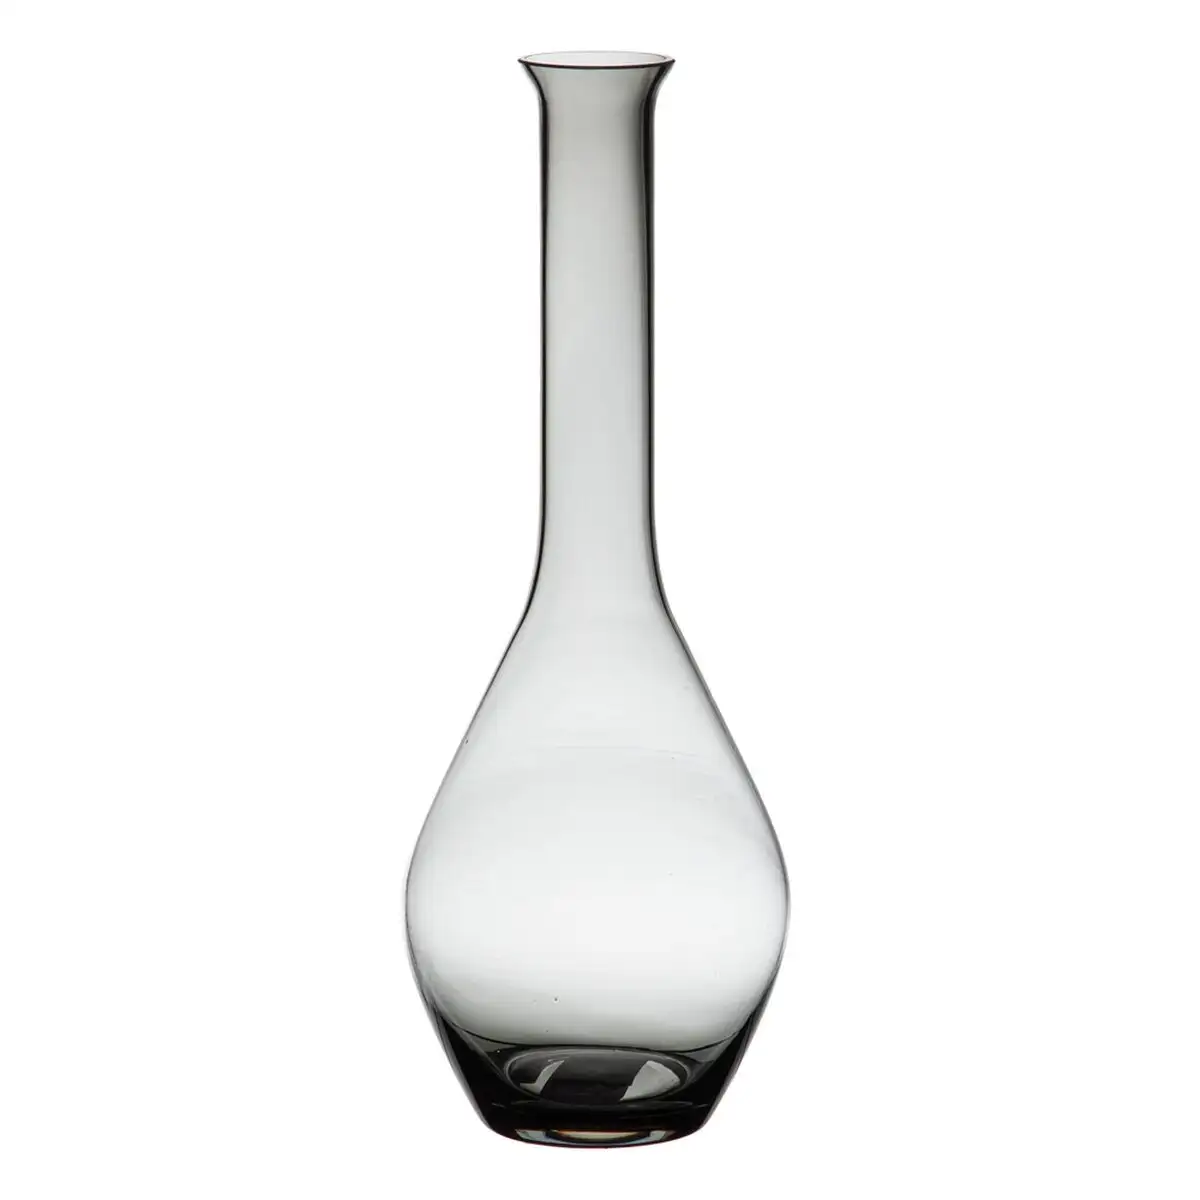 Vase gris verre 12 x 12 x 33 cm_5212. DIAYTAR SENEGAL - L'Art de Trouver ce que Vous Aimez. Plongez dans notre assortiment varié et choisissez parmi des produits qui reflètent votre style et répondent à vos besoins.